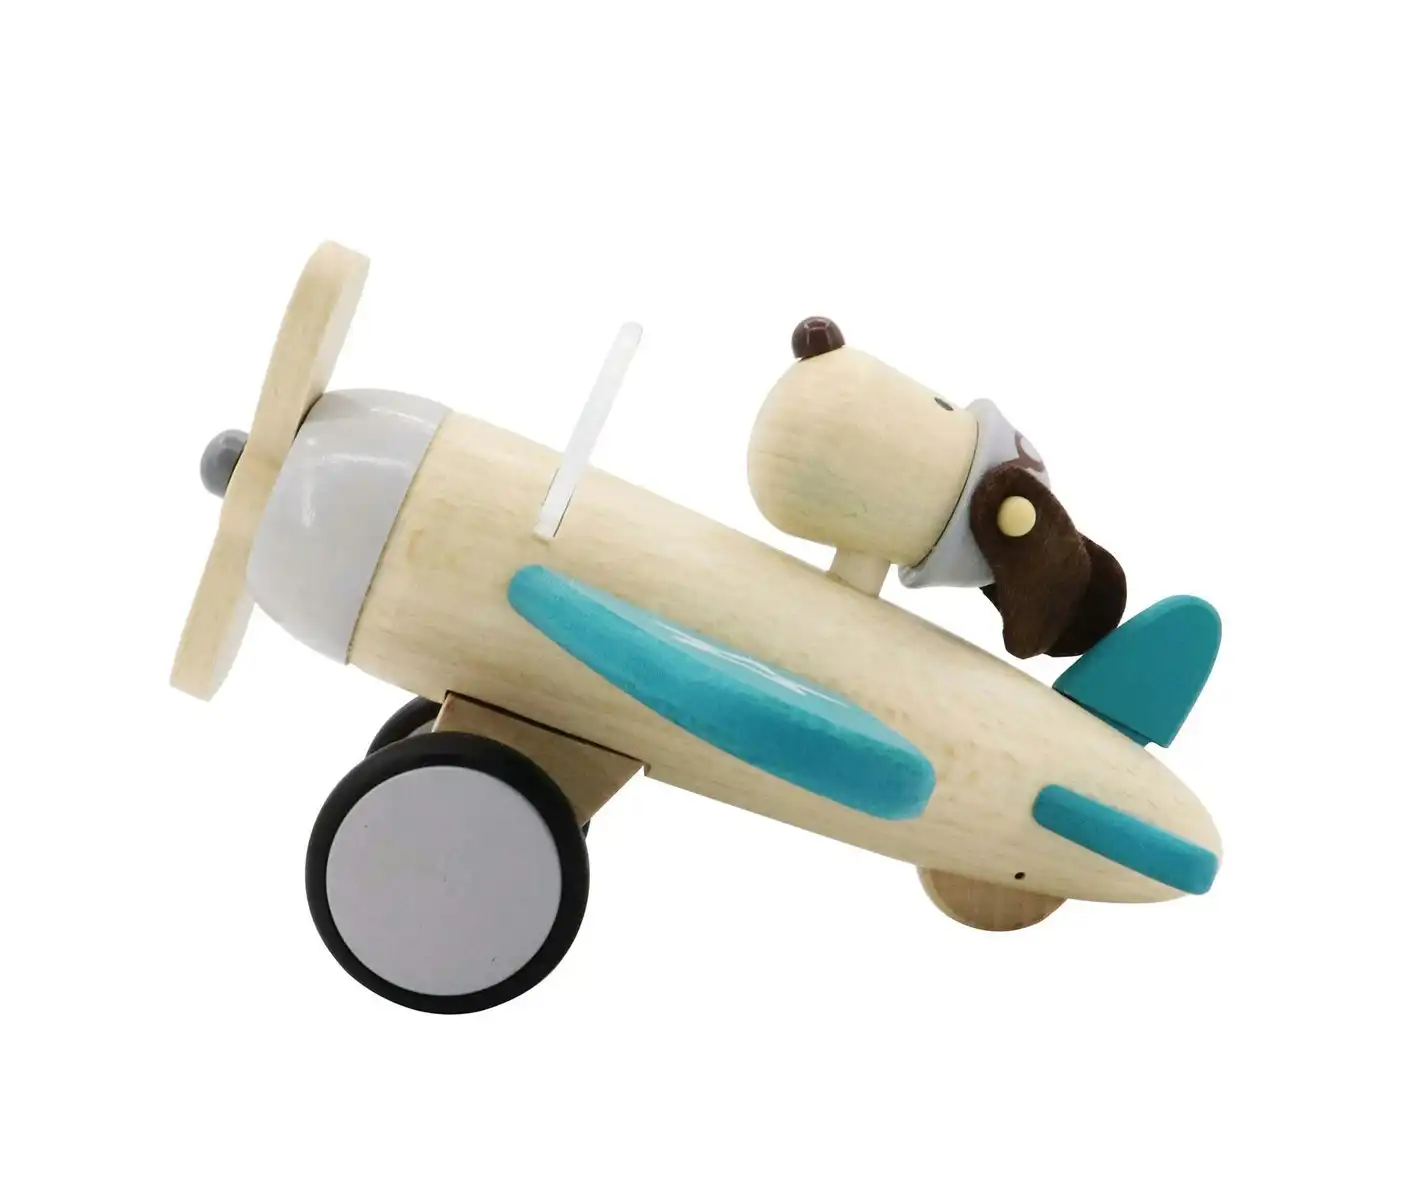 Kaper Kidz Retro Wooden Plane w/Cute Dog Driver Large Kids/Children Toy 12m+